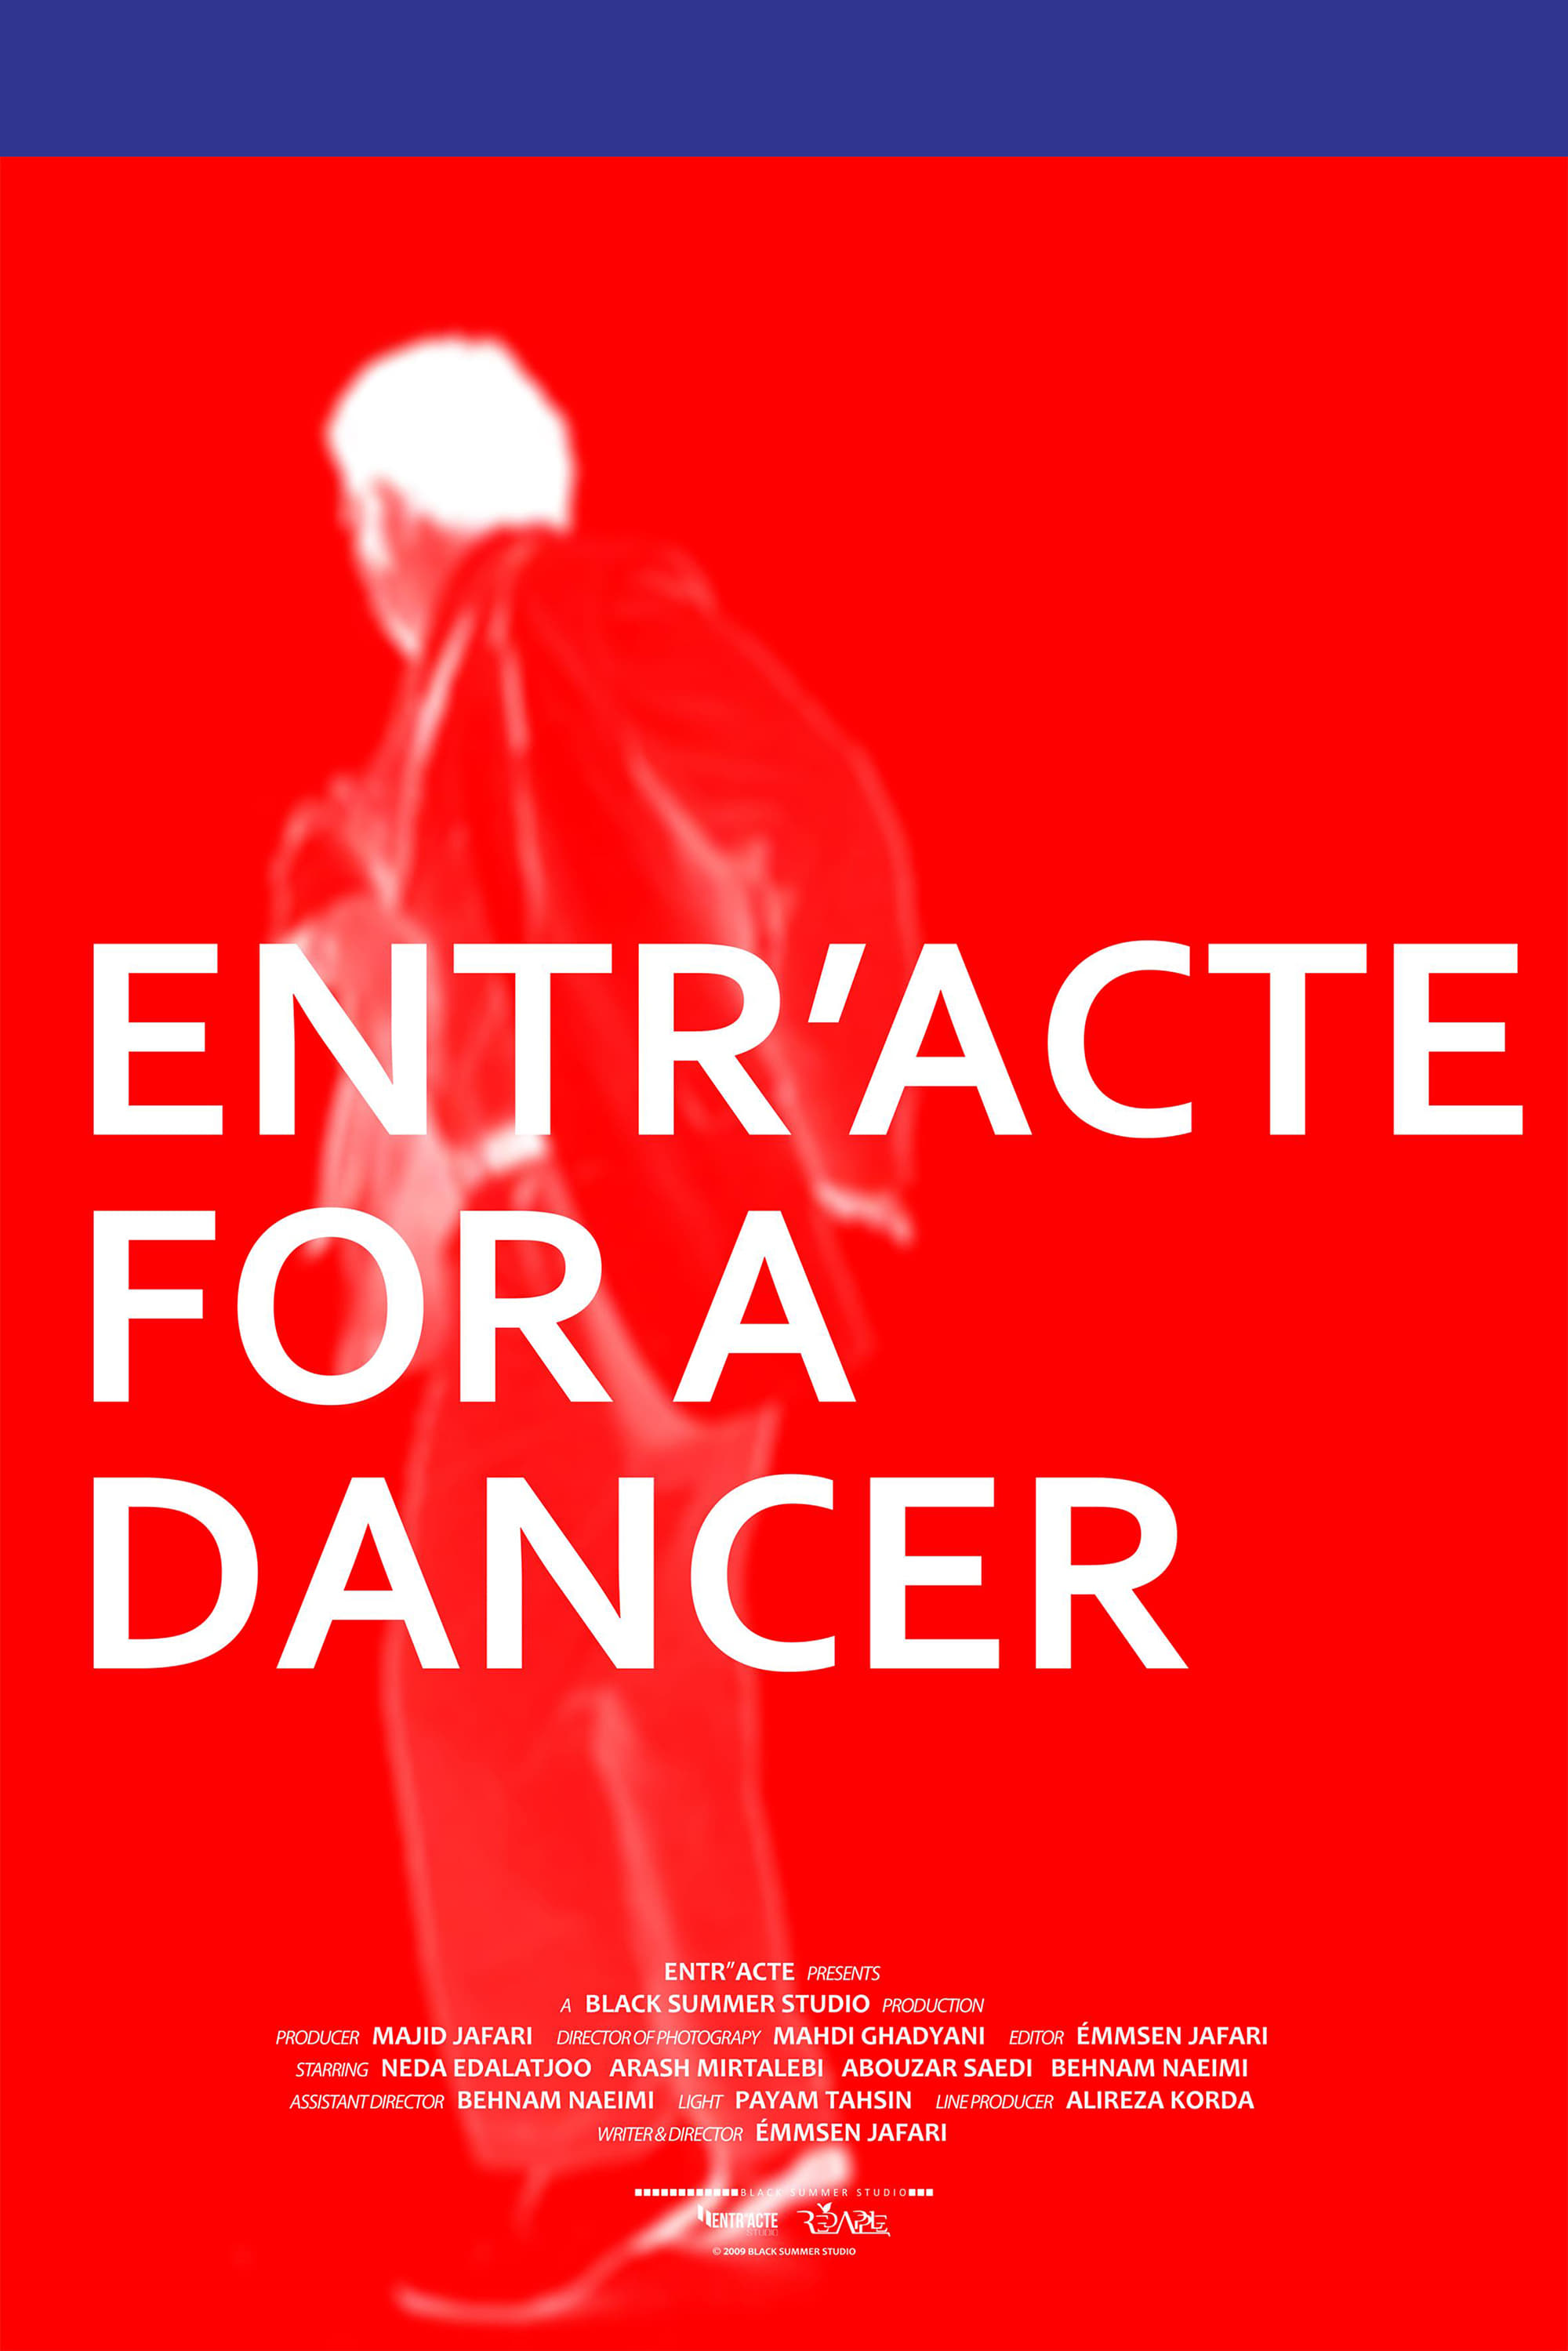 Entr'acte for a Dancer